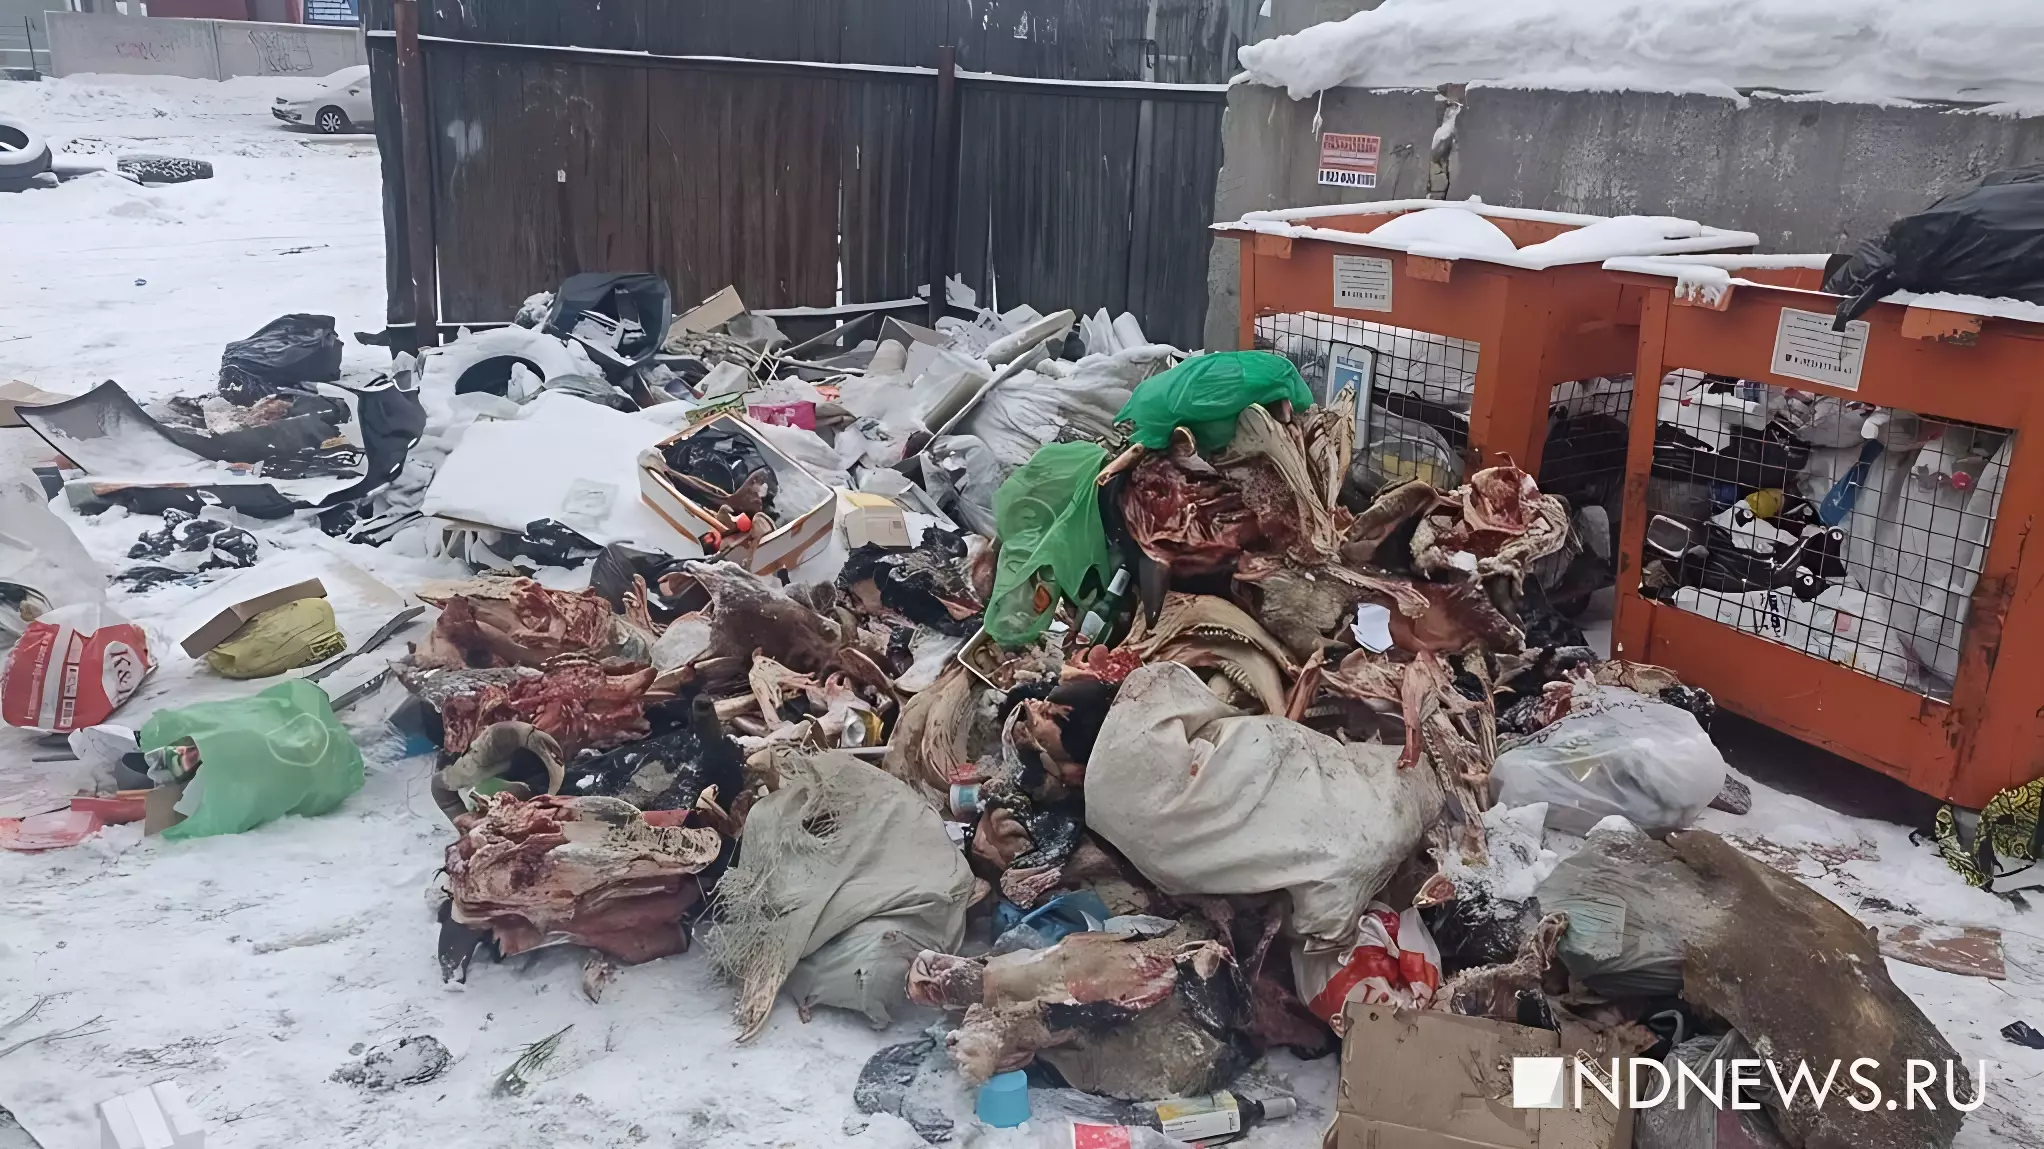 Останки животных разбросаны по детплощадке в Екатеринбурге